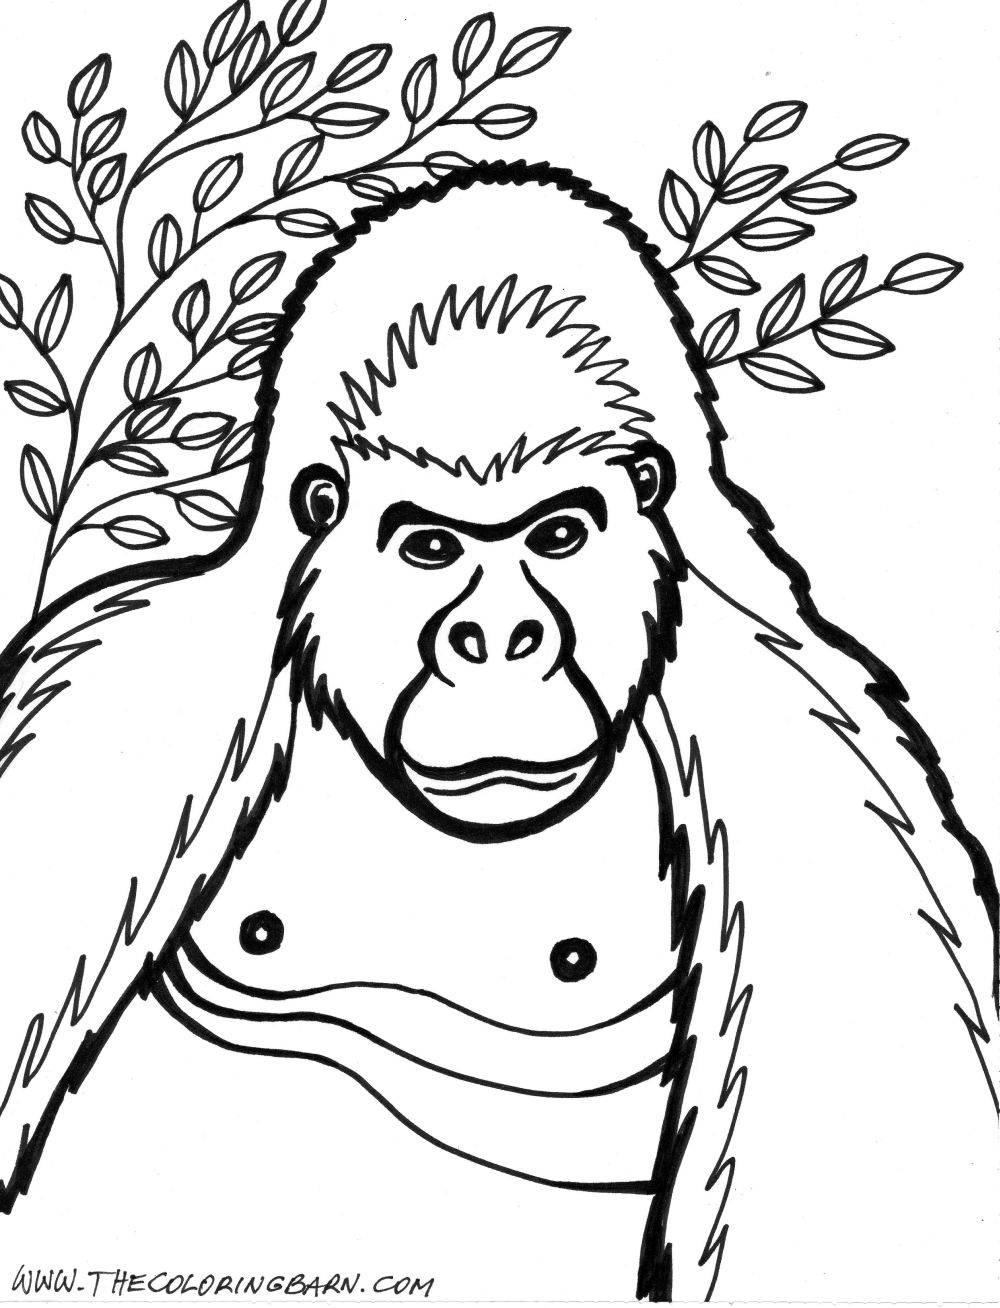 Dessin #13108 - une jolie image de gorille à colorier et imprimer